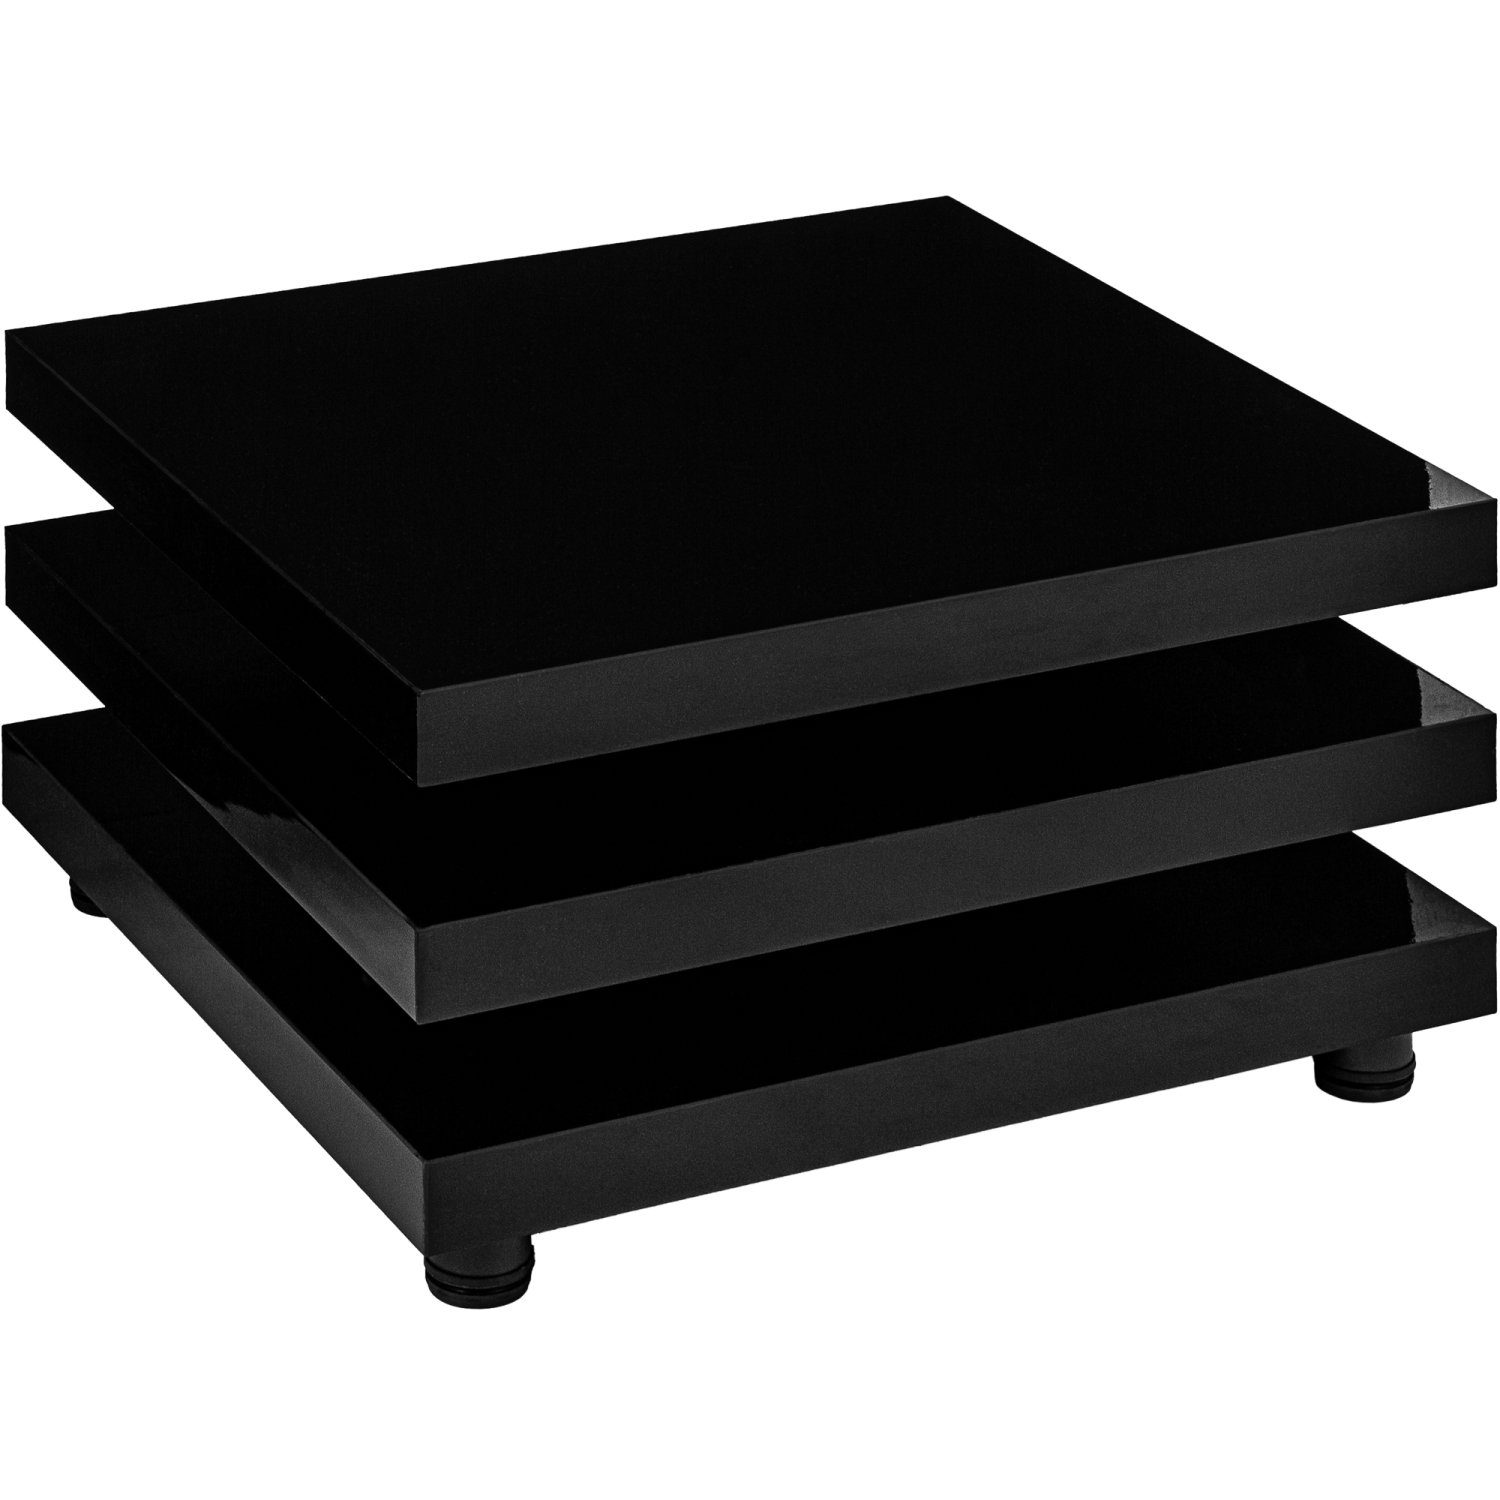 STILISTA Couchtisch Wohnzimmertisch Beistelltisch Sofatisch, 360° schwenkbare Tischplatten, Cube-Design, Farb- und Größenwahl